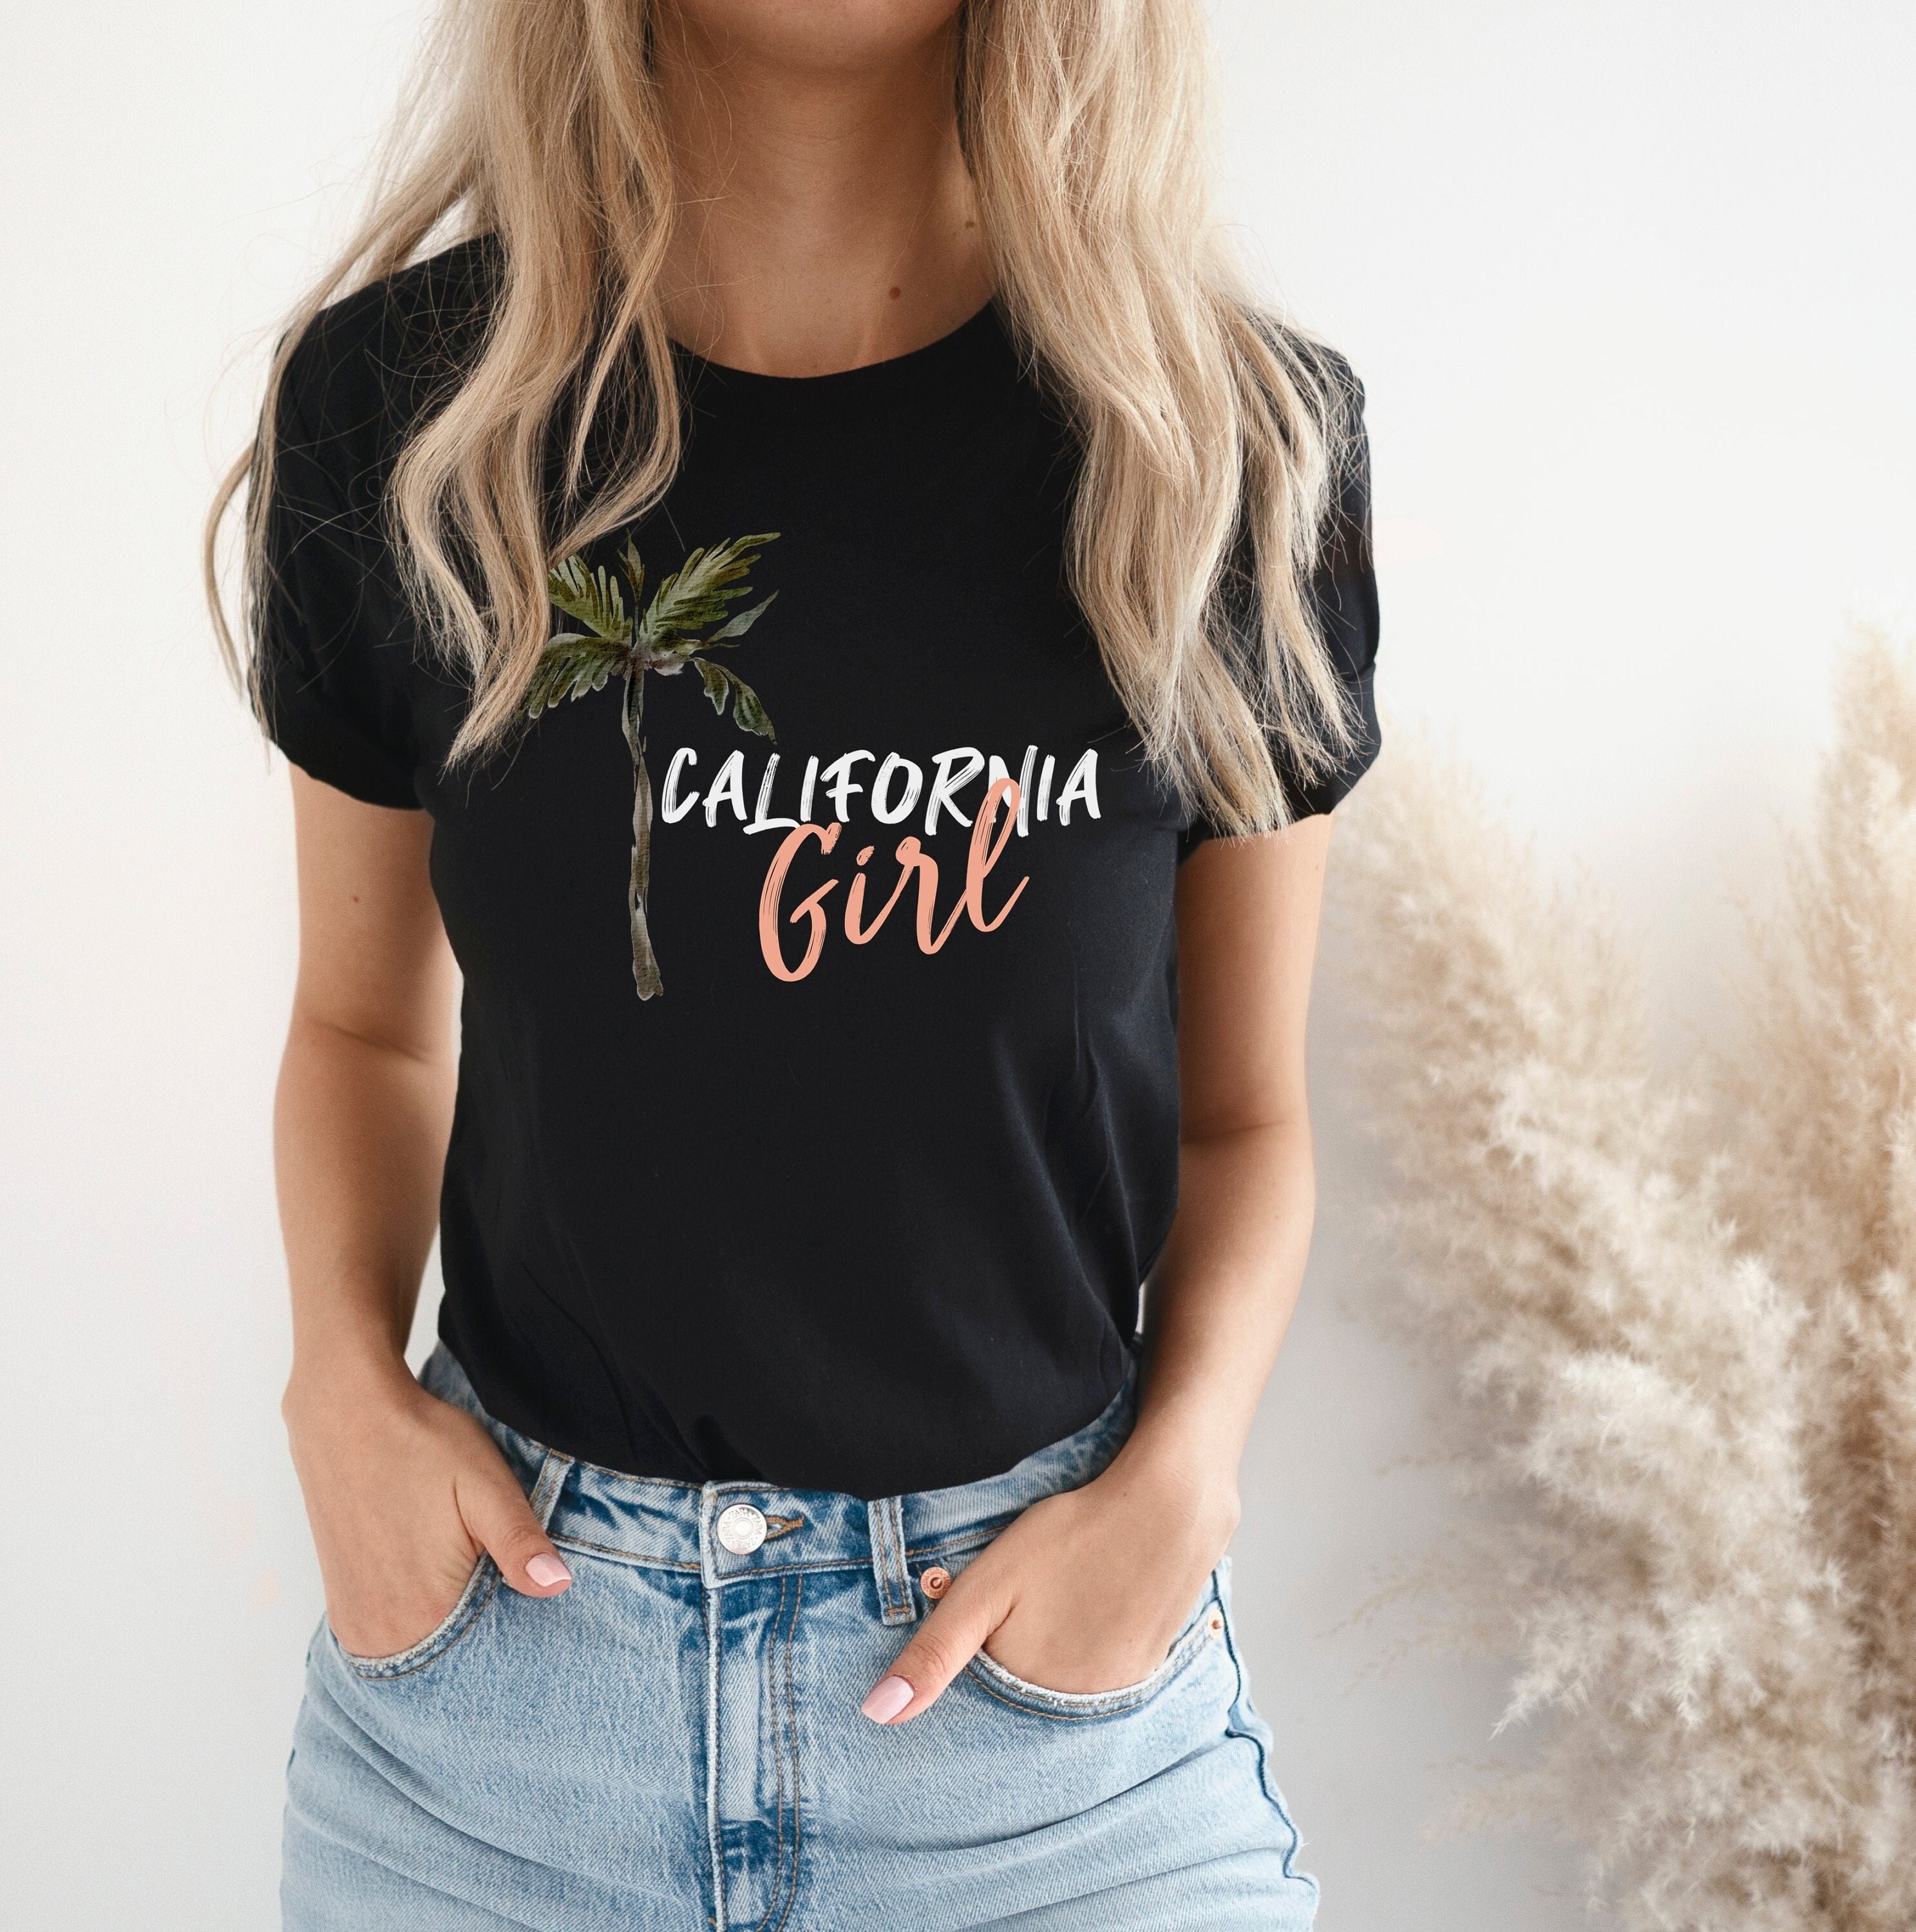 Cali Girl California Tshirt California Shirt Gift Palm Tree | Etsy